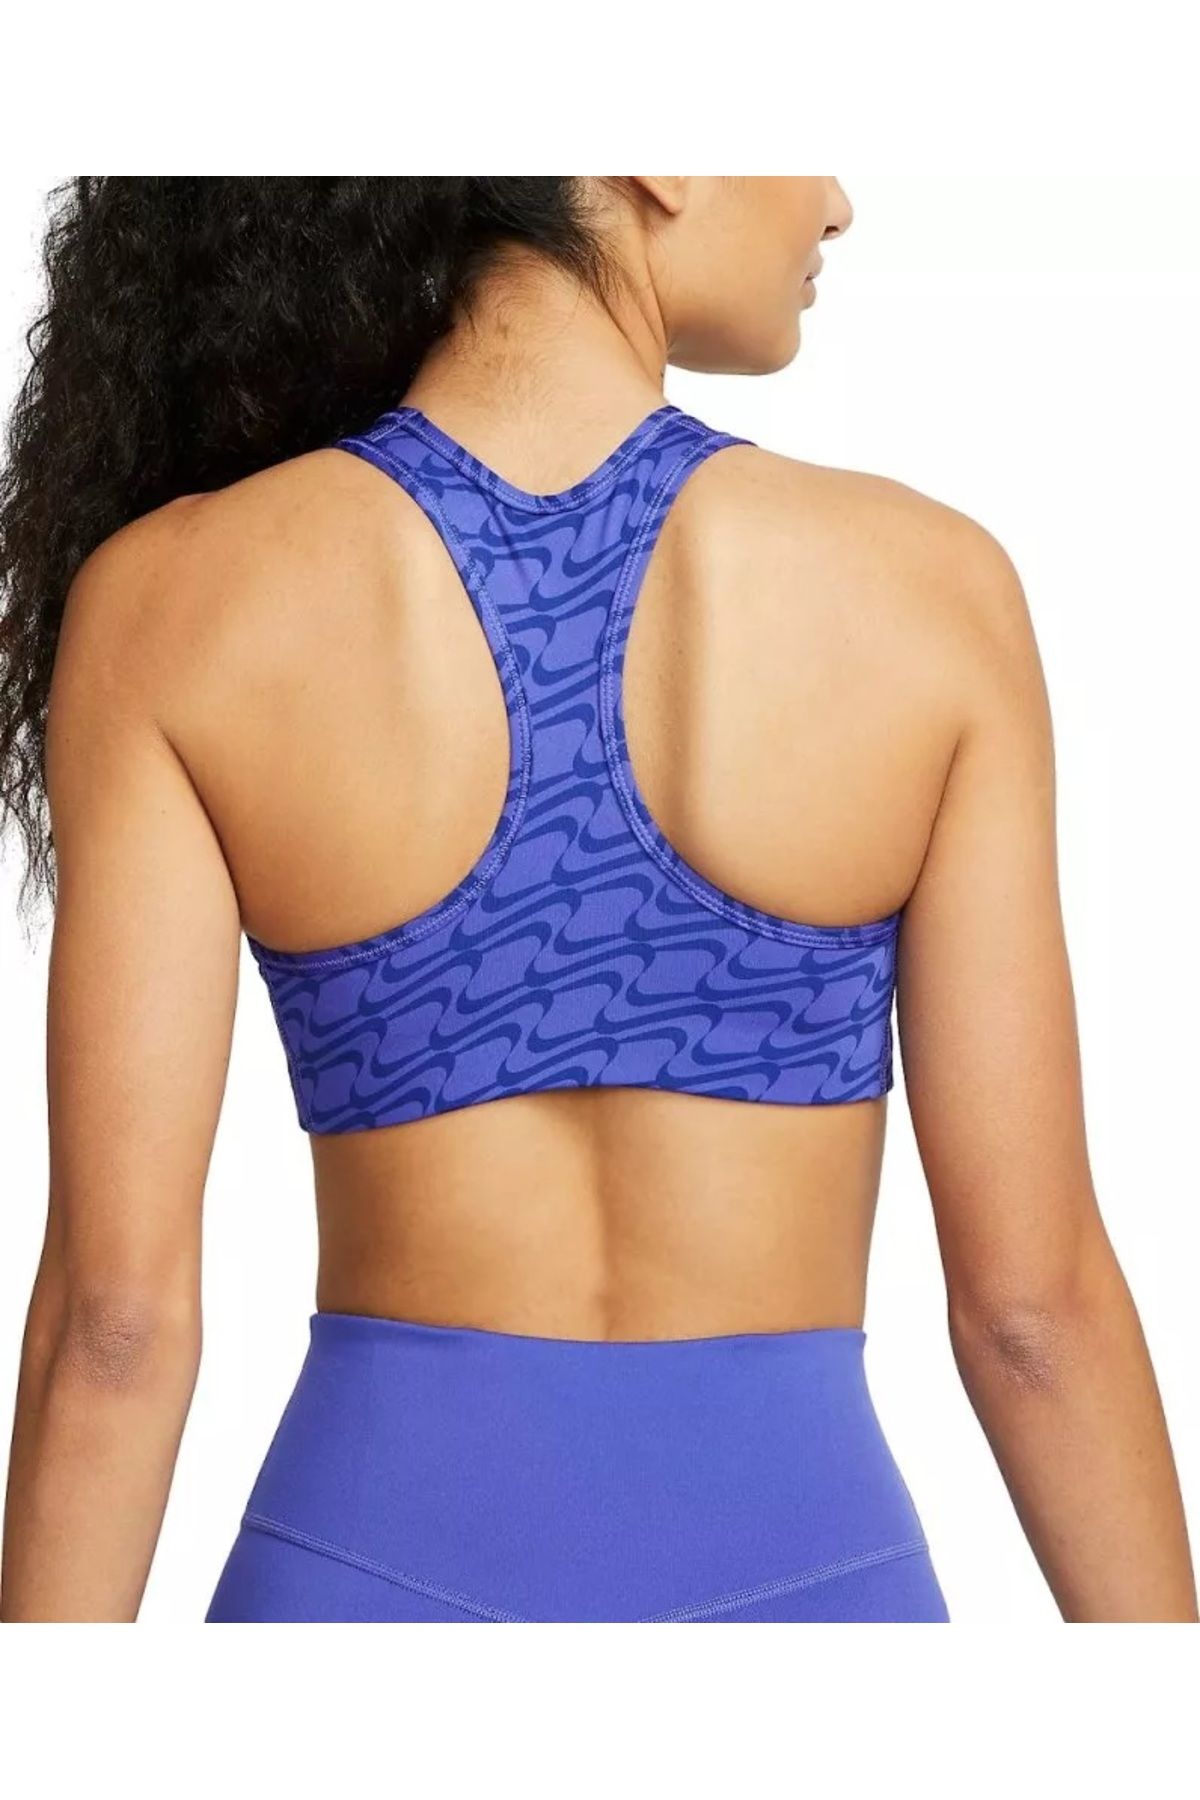 Nike Dri-FIT Women's blue Bralette Sports Bra - Trendyol